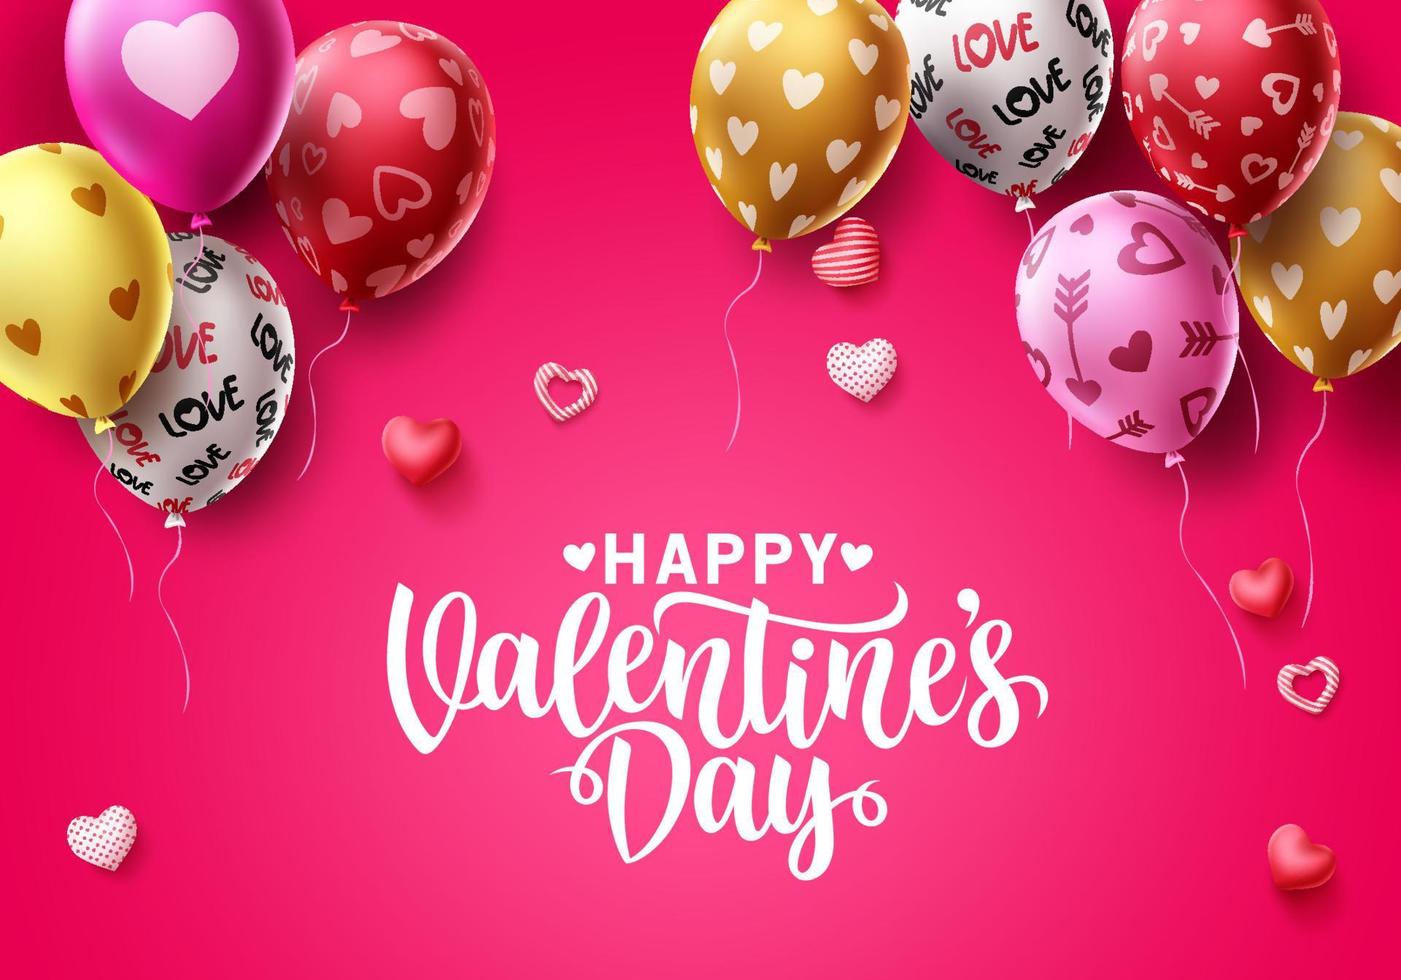 Happy Valentinstag Vektor Hintergrunddesign. Valentinstag Ballons mit bunten Herzmustern und Grußtext für Feiertage und Geburtstagsfeiern. Vektor-Illustration.